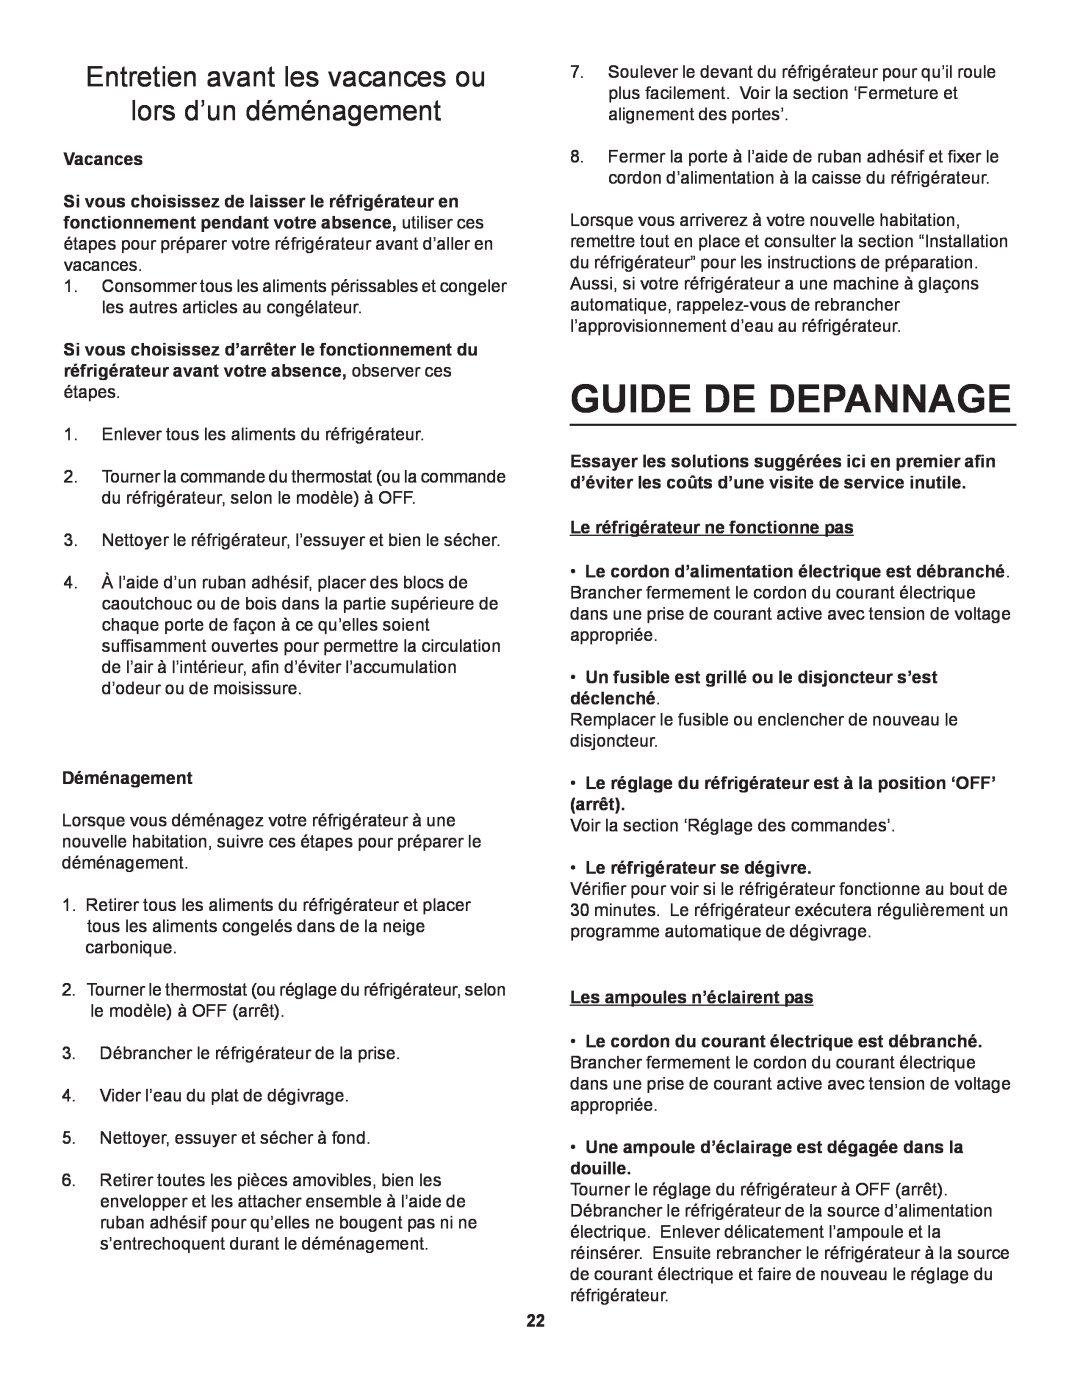 Danby D1866WE manual Guide De Depannage, Entretien avant les vacances ou lors d’un déménagement, Vacances, Déménagement 